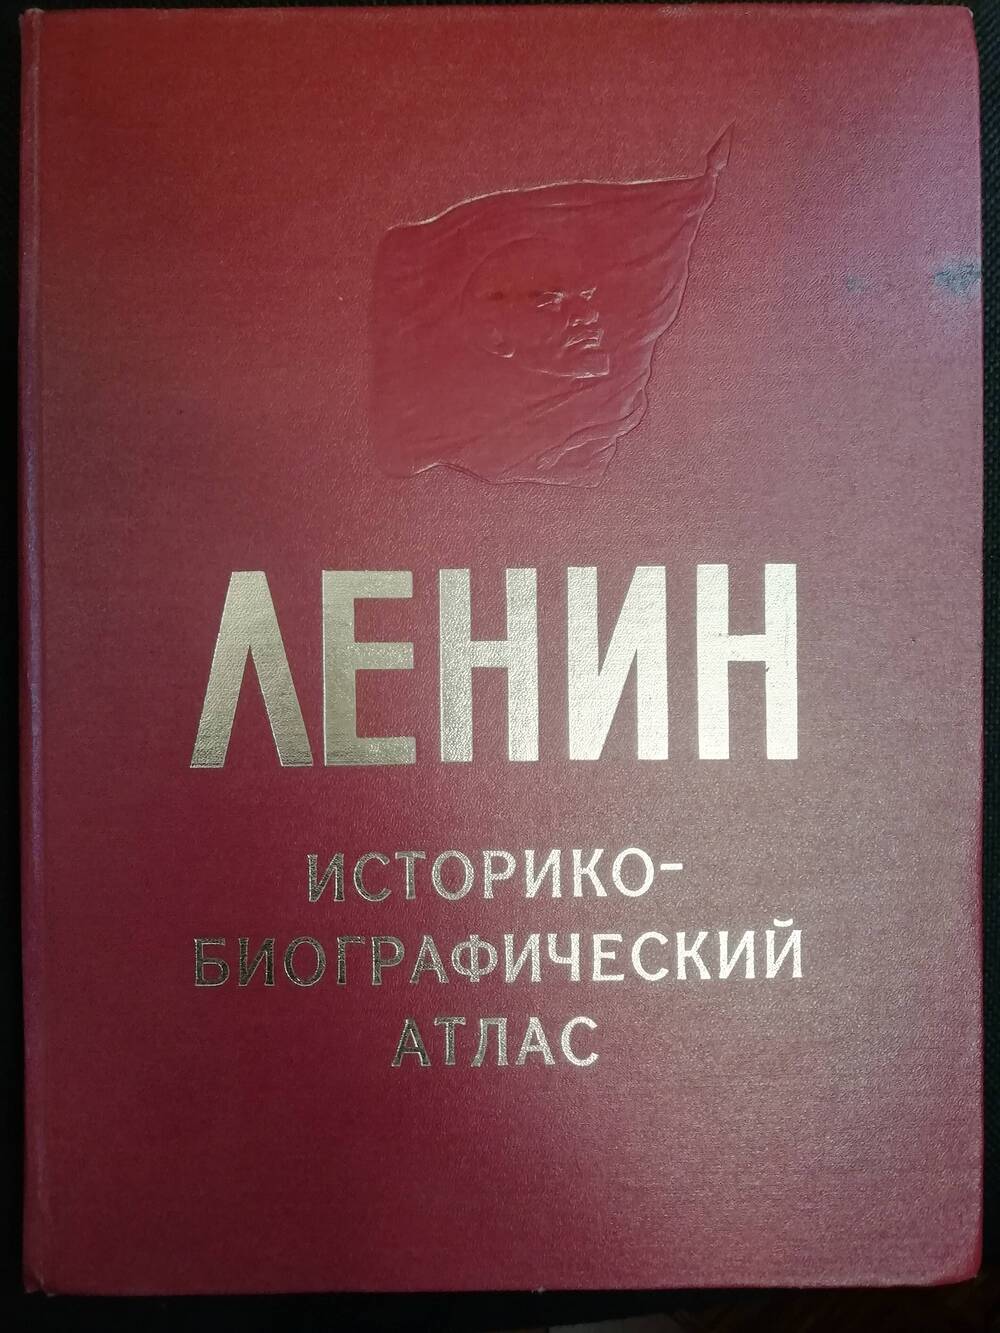 Ленин Историко-биографический атлас